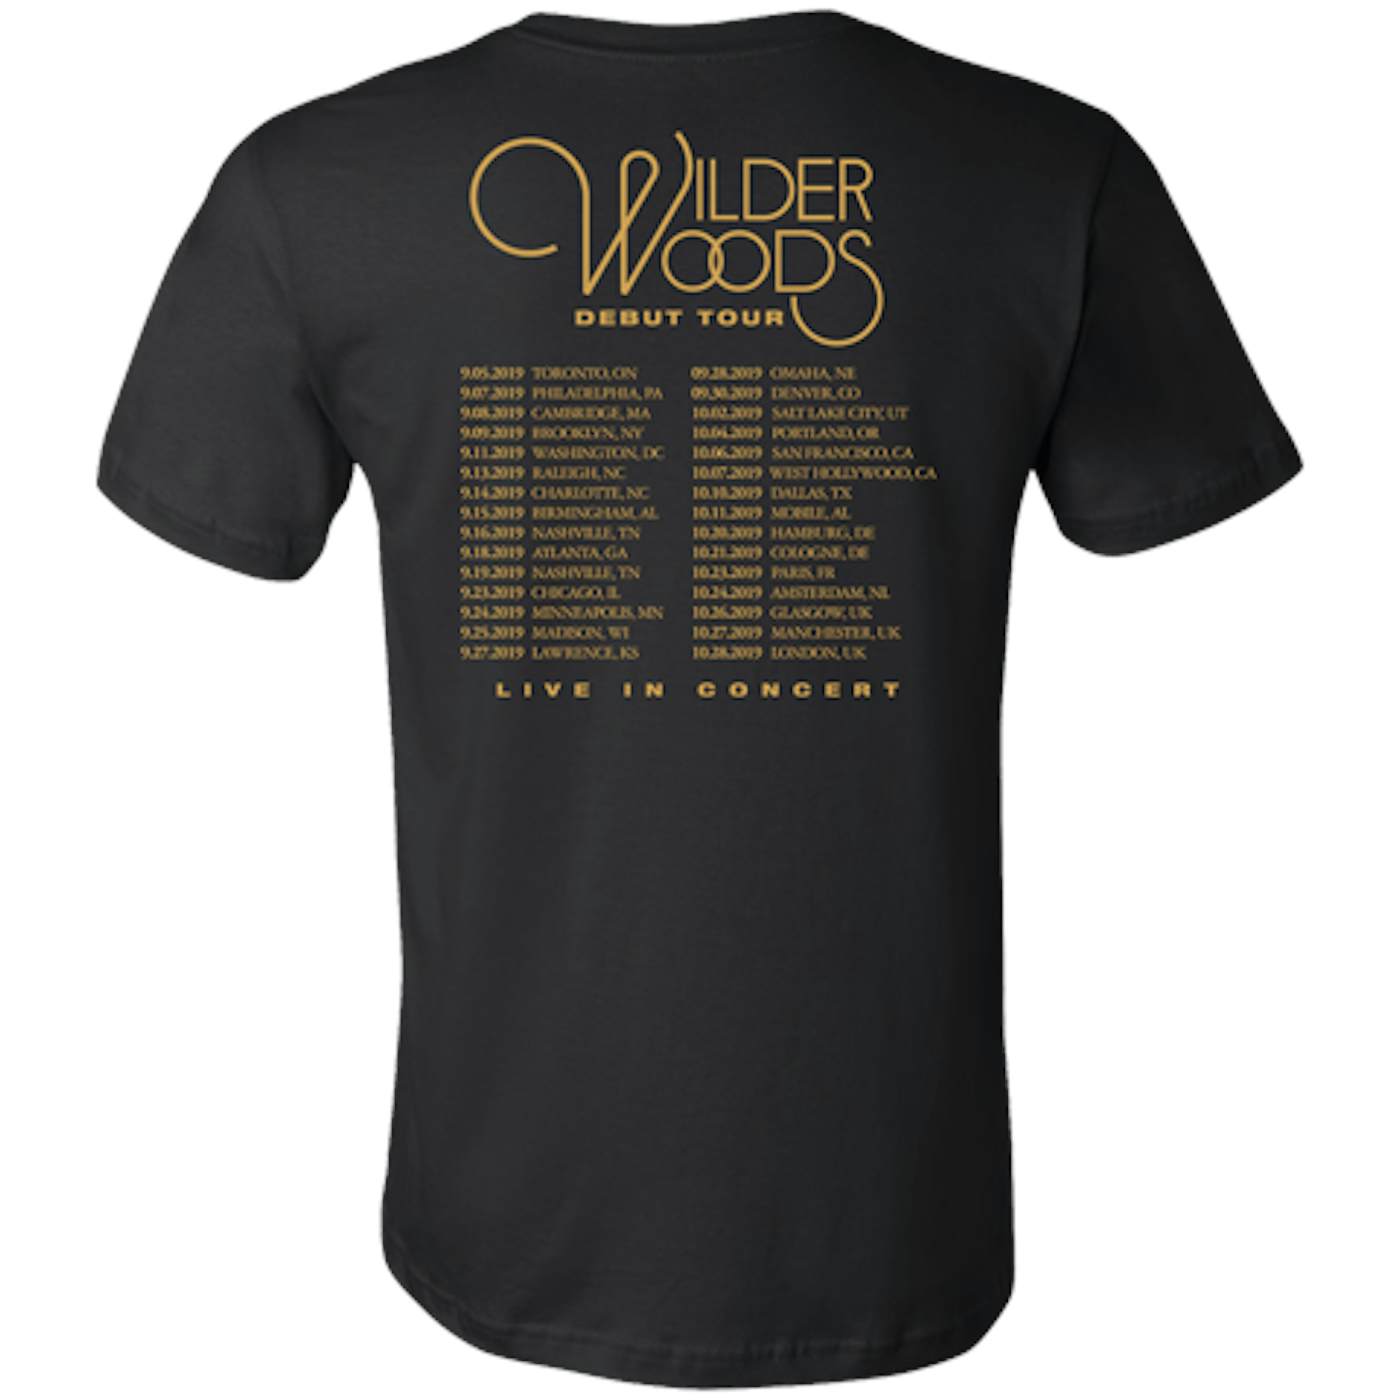 Wilder Woods Debut Tour Tee